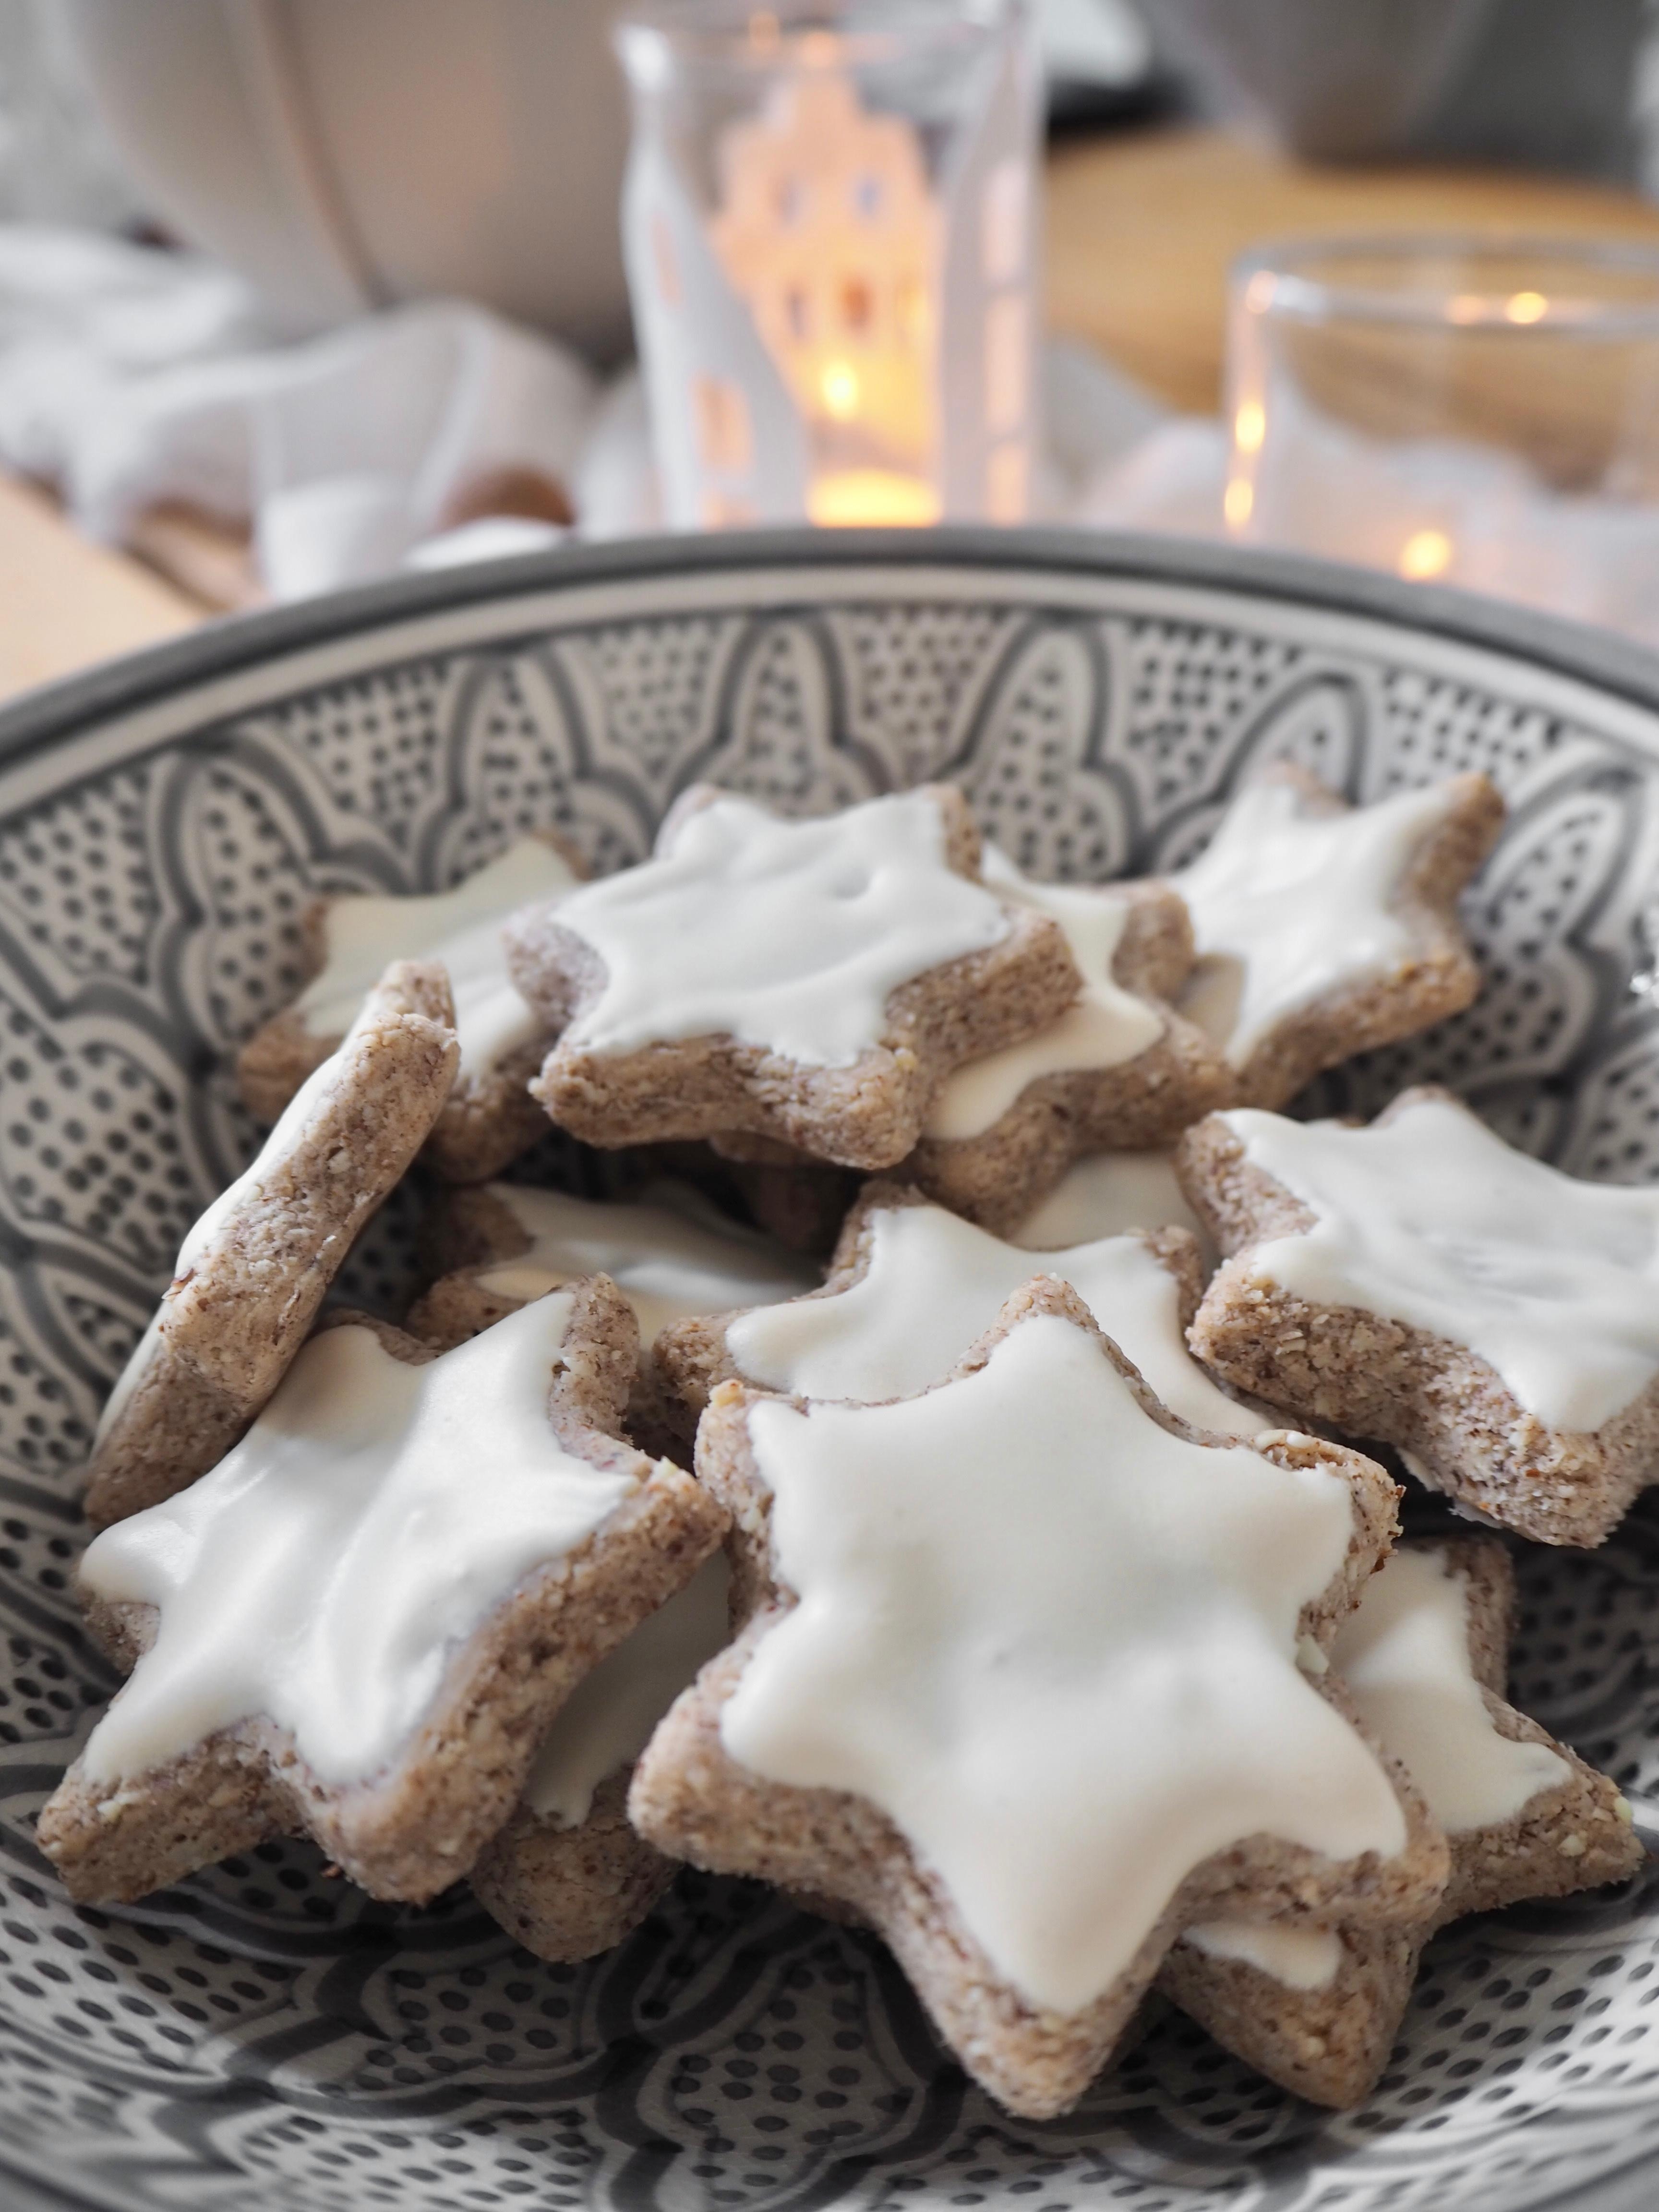 ⭐️ Kakao und selfmade #zimtsterne #plätzchen #weihnachtsbäckerei #backen #kekse #weihnachtsvorfreude